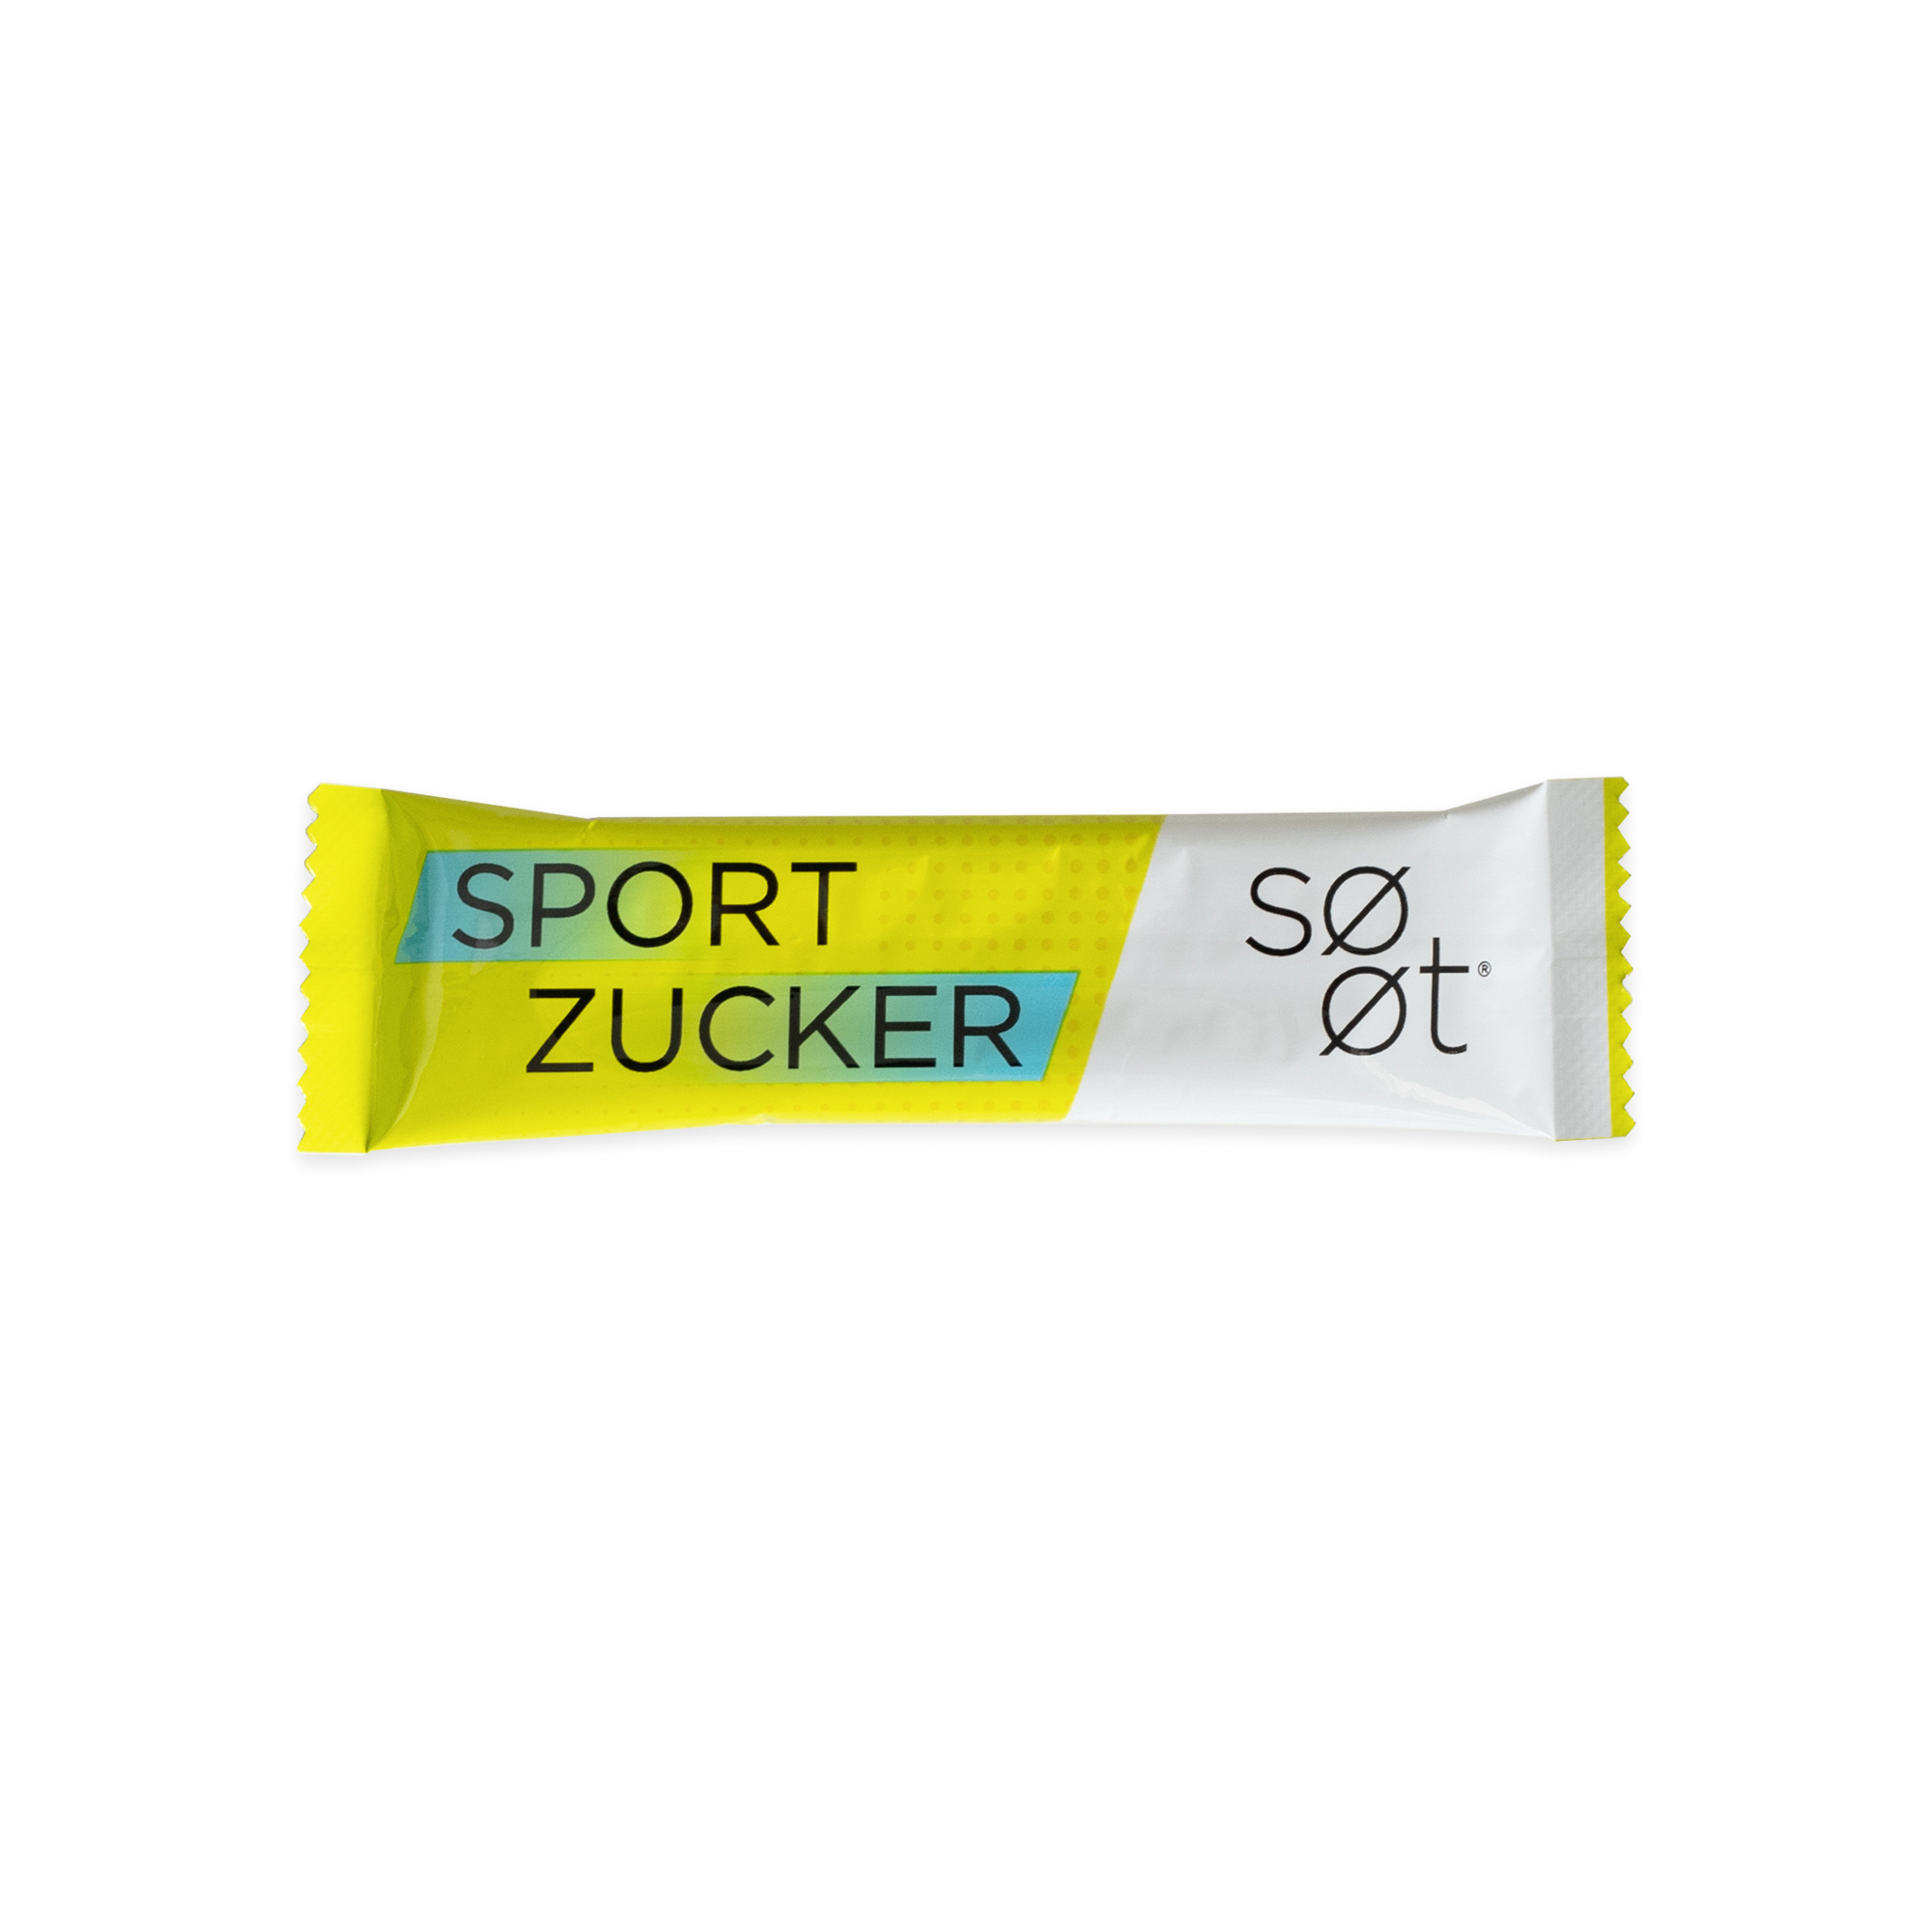 สปอร์ตซูเกอร์ (Sportzucker) - แบบผง (12g)